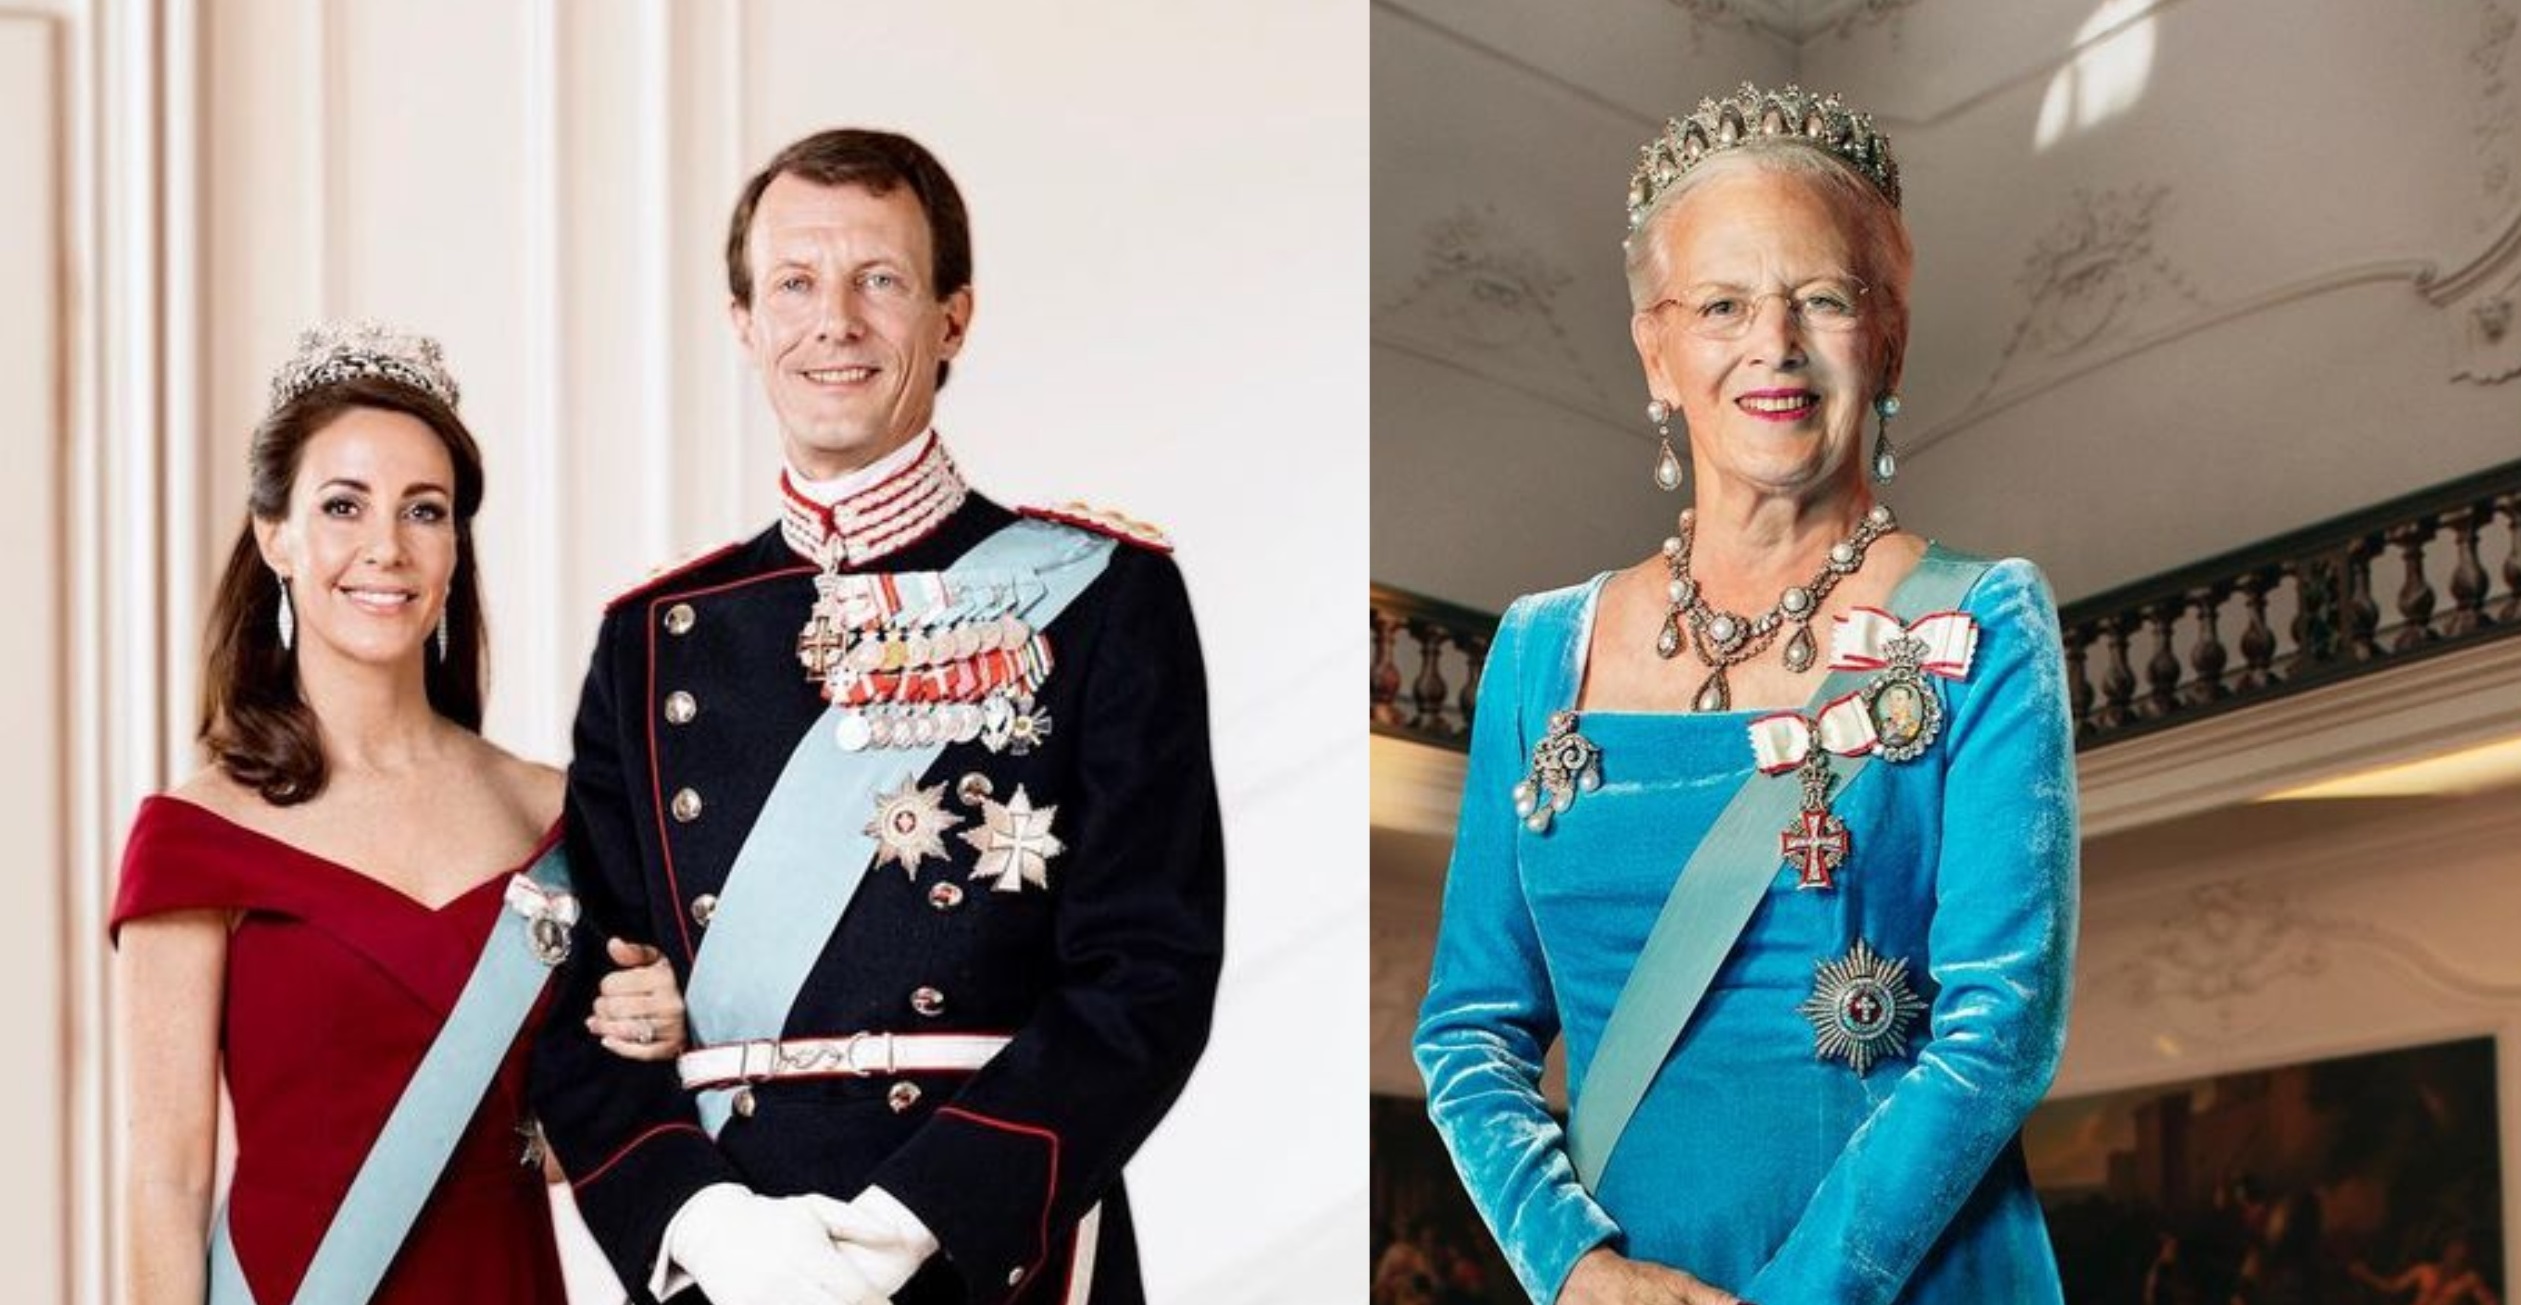 Νέα ανακοίνωση από τη βασίλισσα Μαργαρίτα - Τι αναφέρει για τη σύζυγο του Ιωακείμ και τη μετακόμιση στις ΗΠΑ